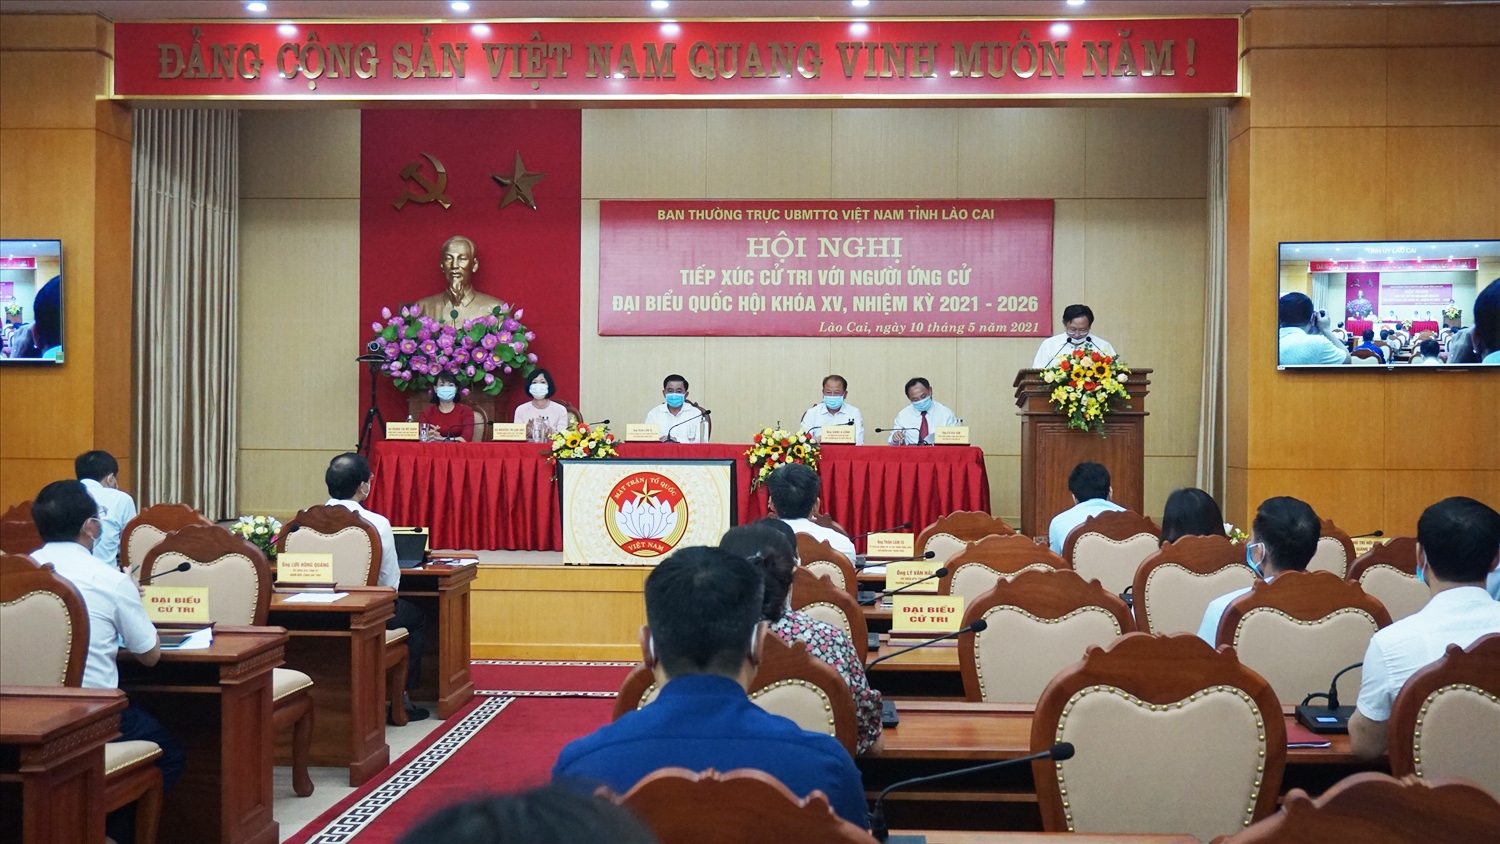 Vừa qua, tỉnh Lào Cai cũng đã tổ chức tiếp xúc cử tri với người ứng cử bằng hình thức trực tuyến để phòng, chống dịch bệnh